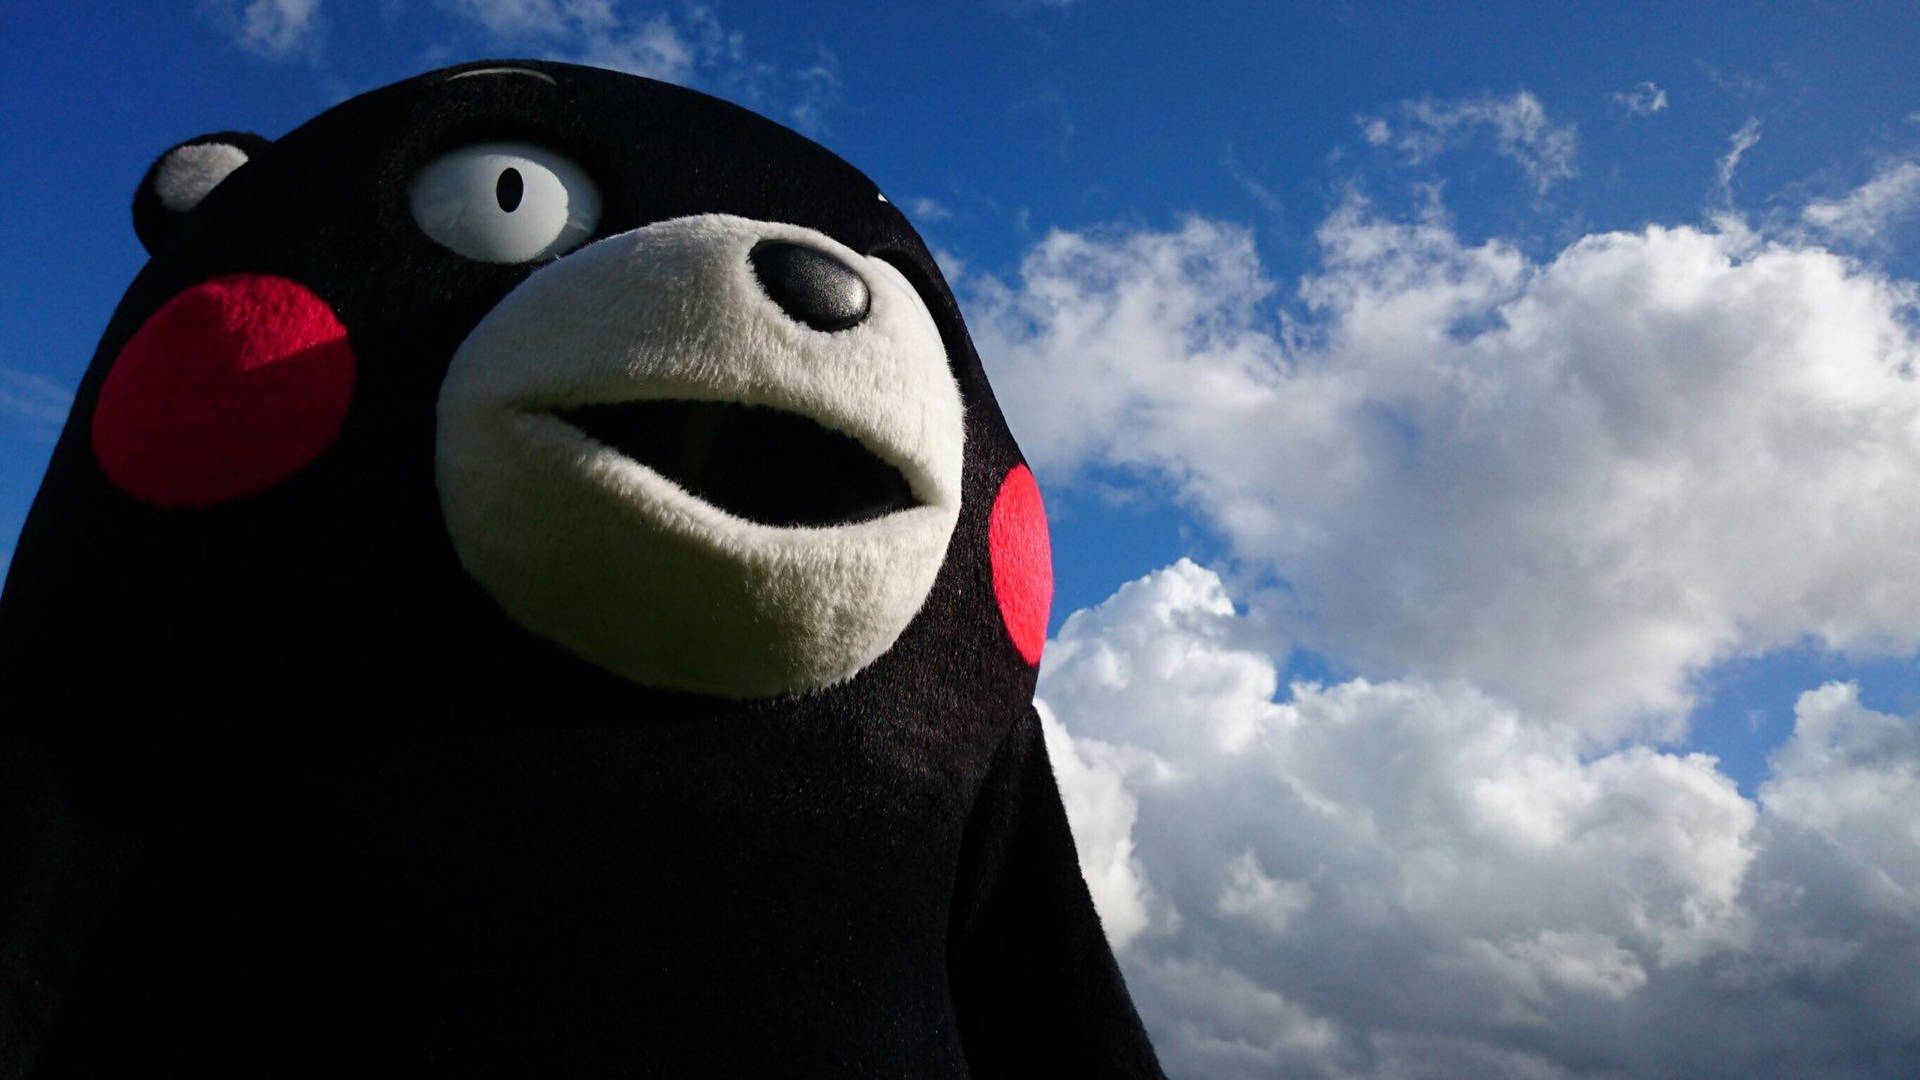 Kumamon Mascot Under The Sky